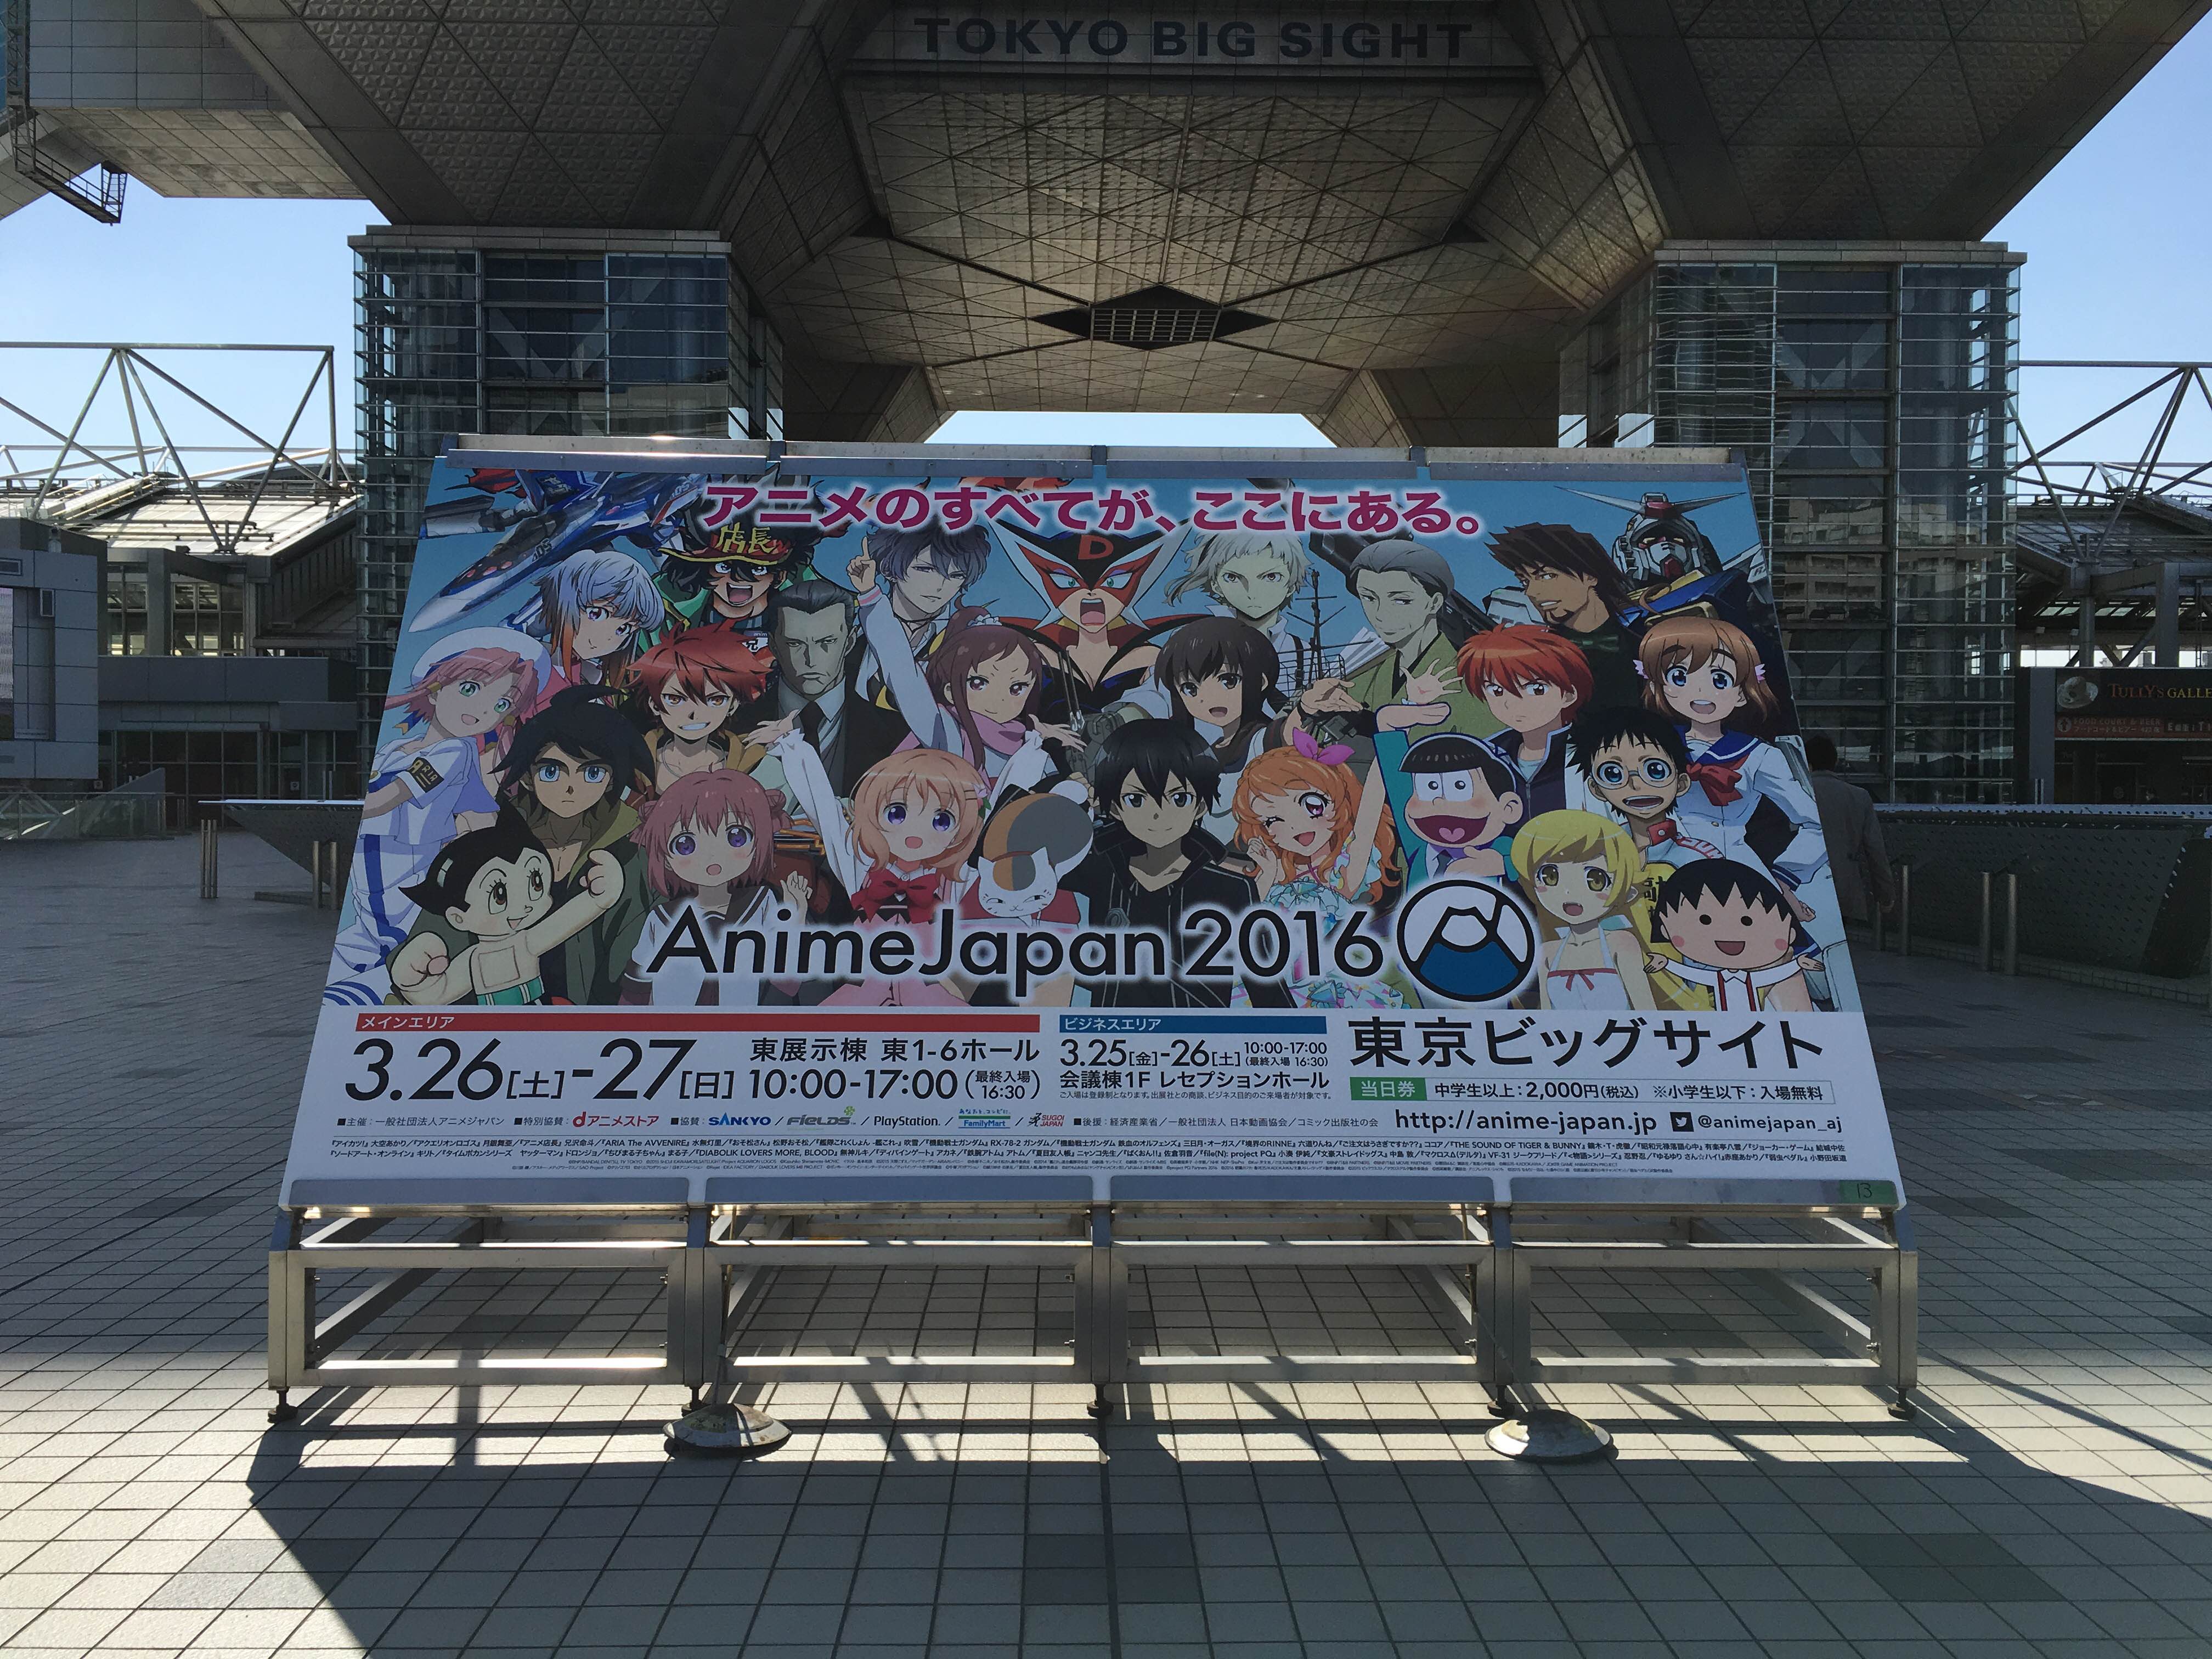 世界最大級のアニメイベント Animejapan 16 が本日開幕 出展者総数は18 増の174社と過去最大に Social Game Info